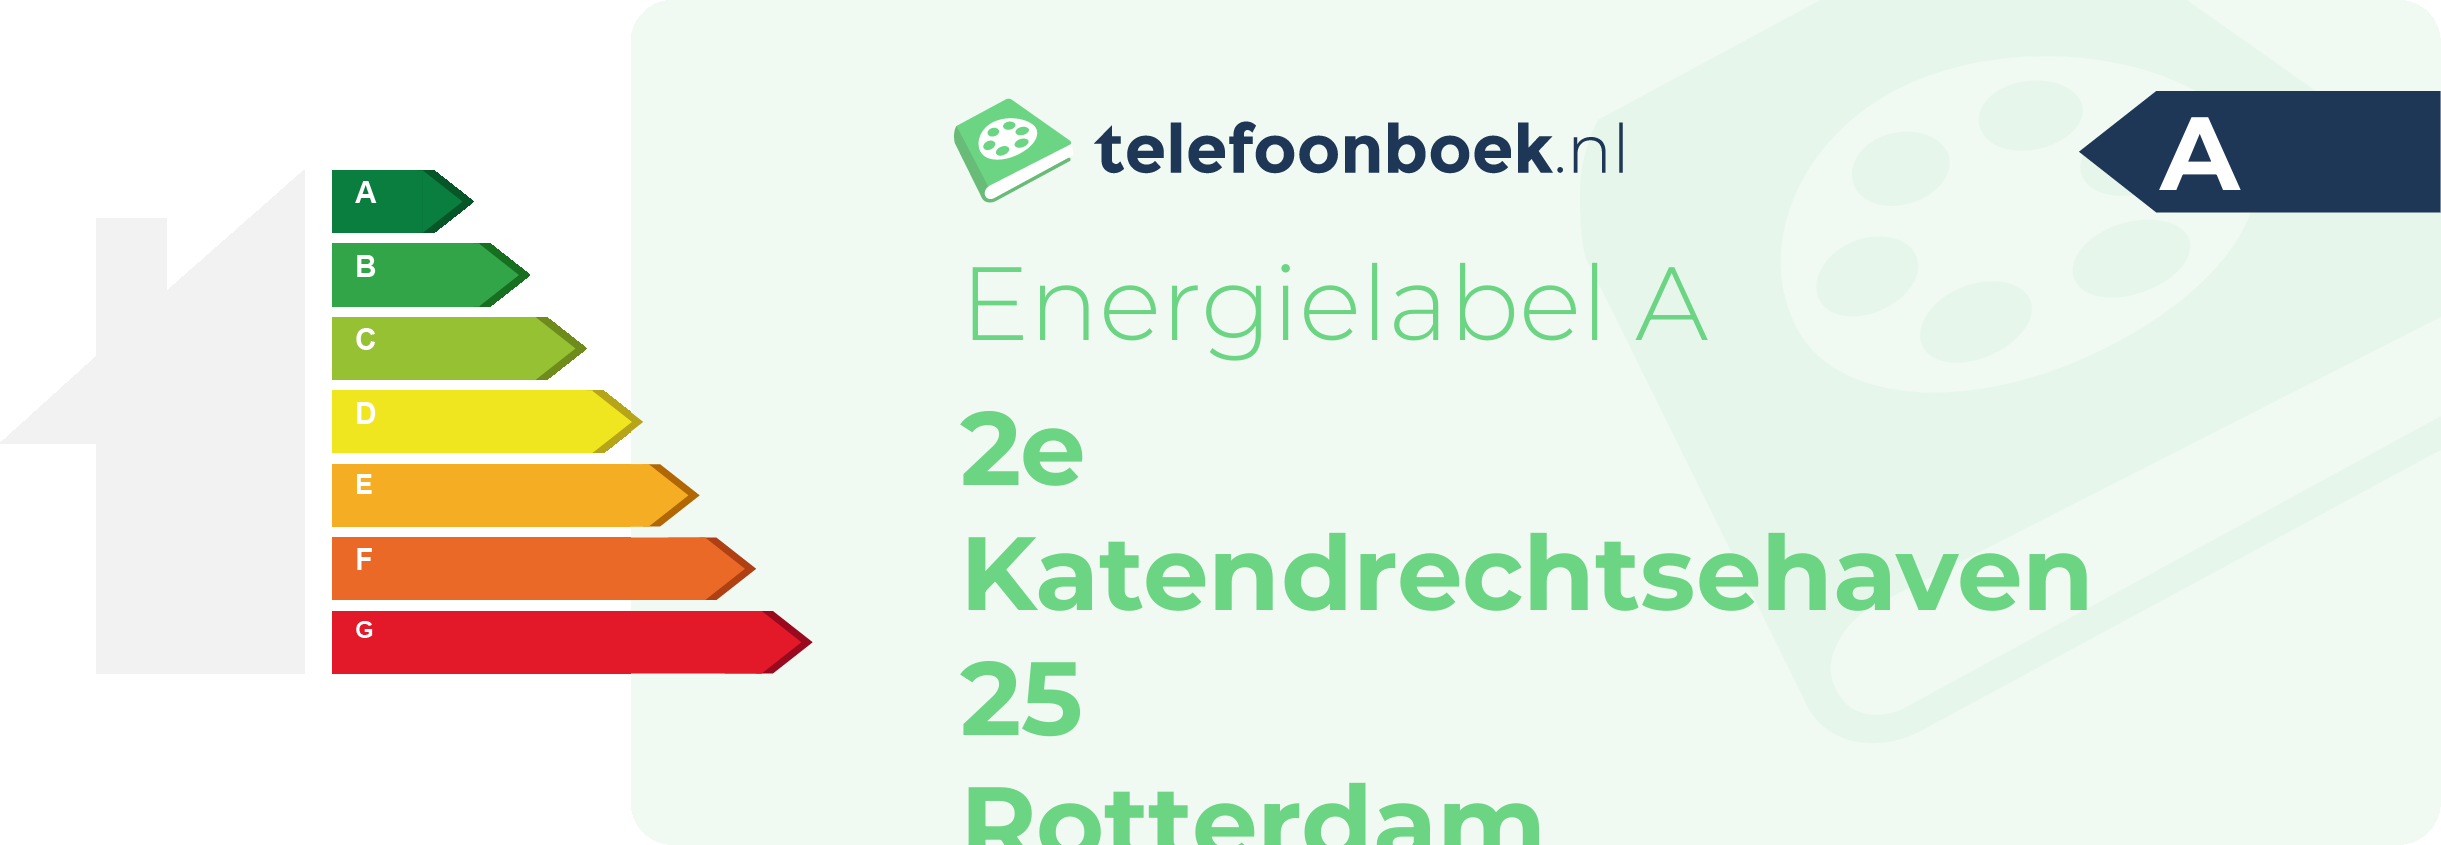 Energielabel 2e Katendrechtsehaven 25 Rotterdam